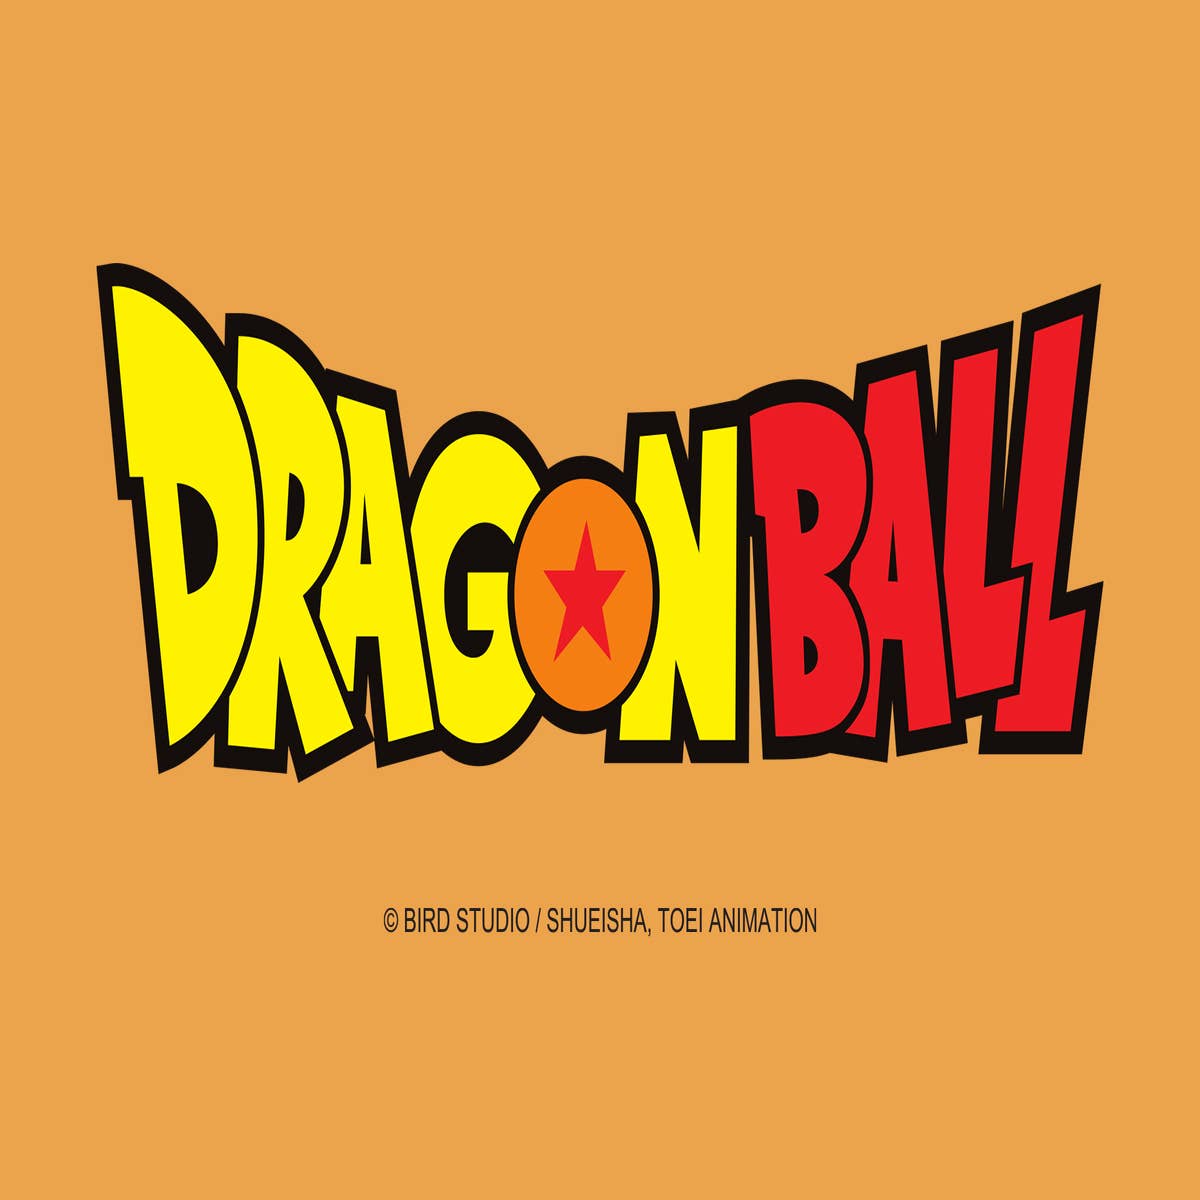 Dragonball Evolution - movie: watch stream online